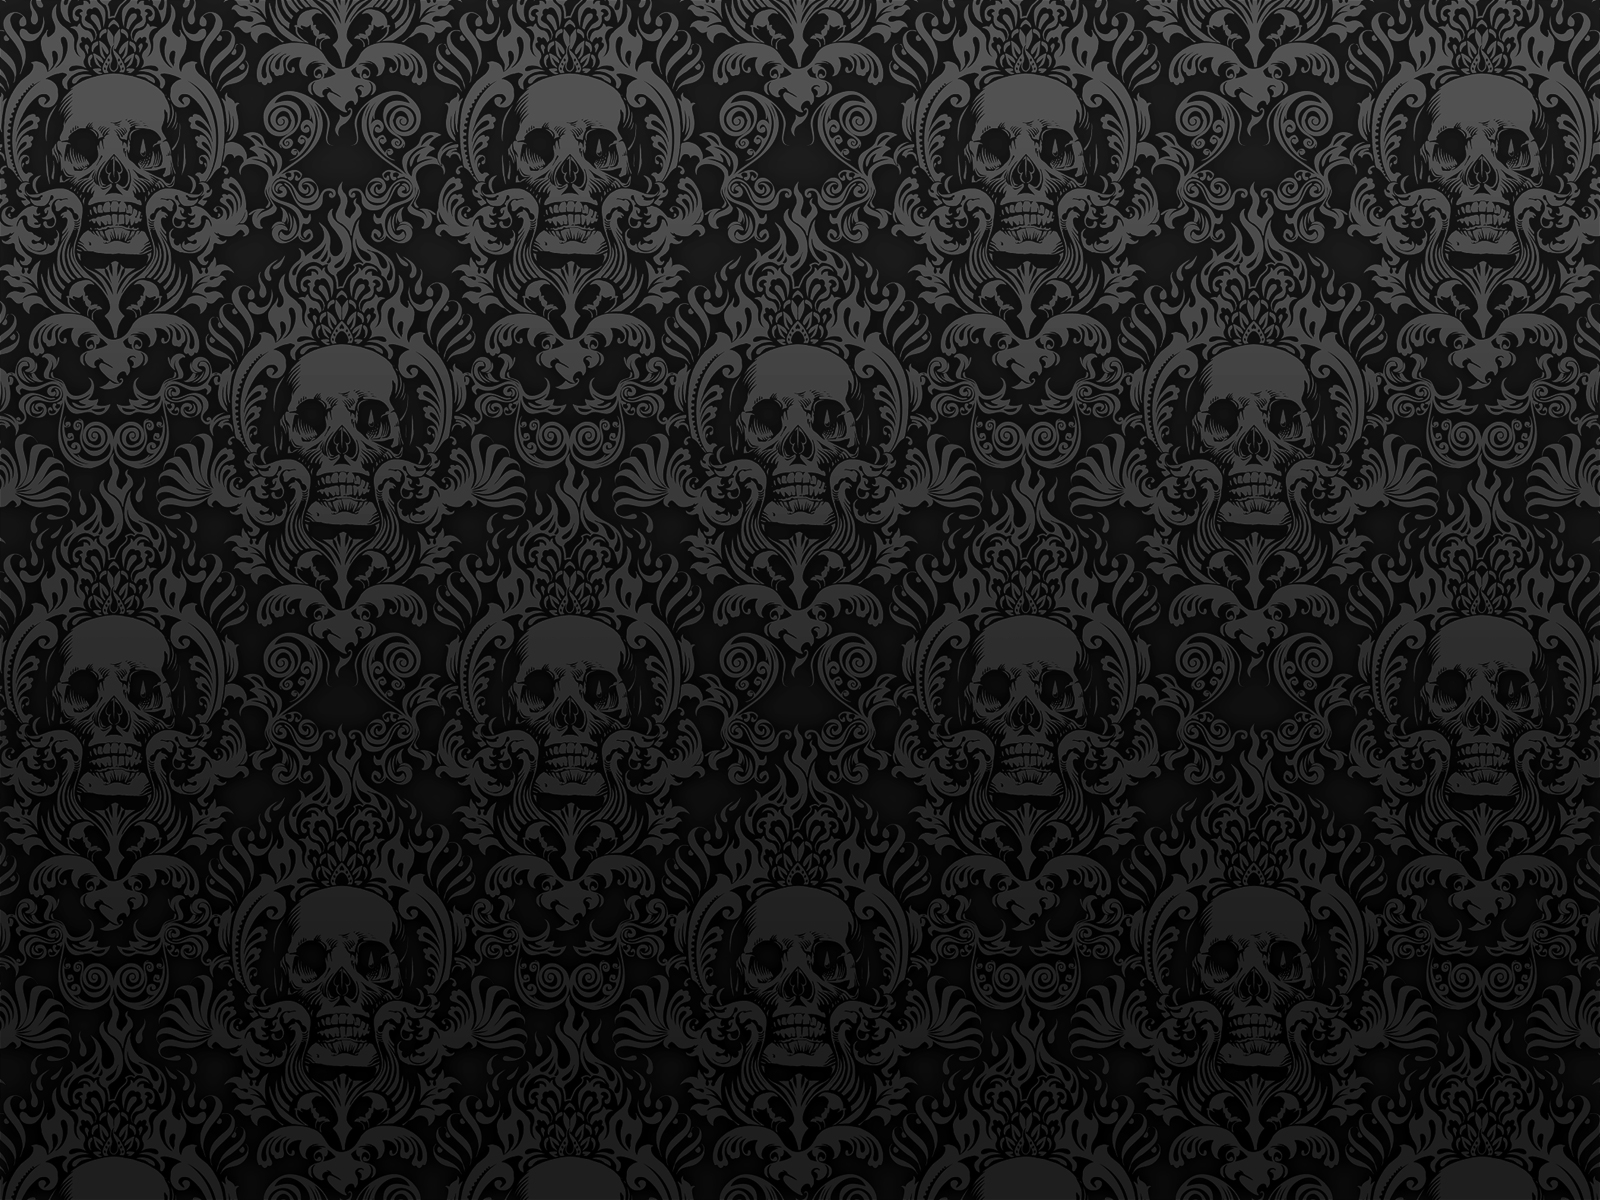 Skull desktop backgrounds